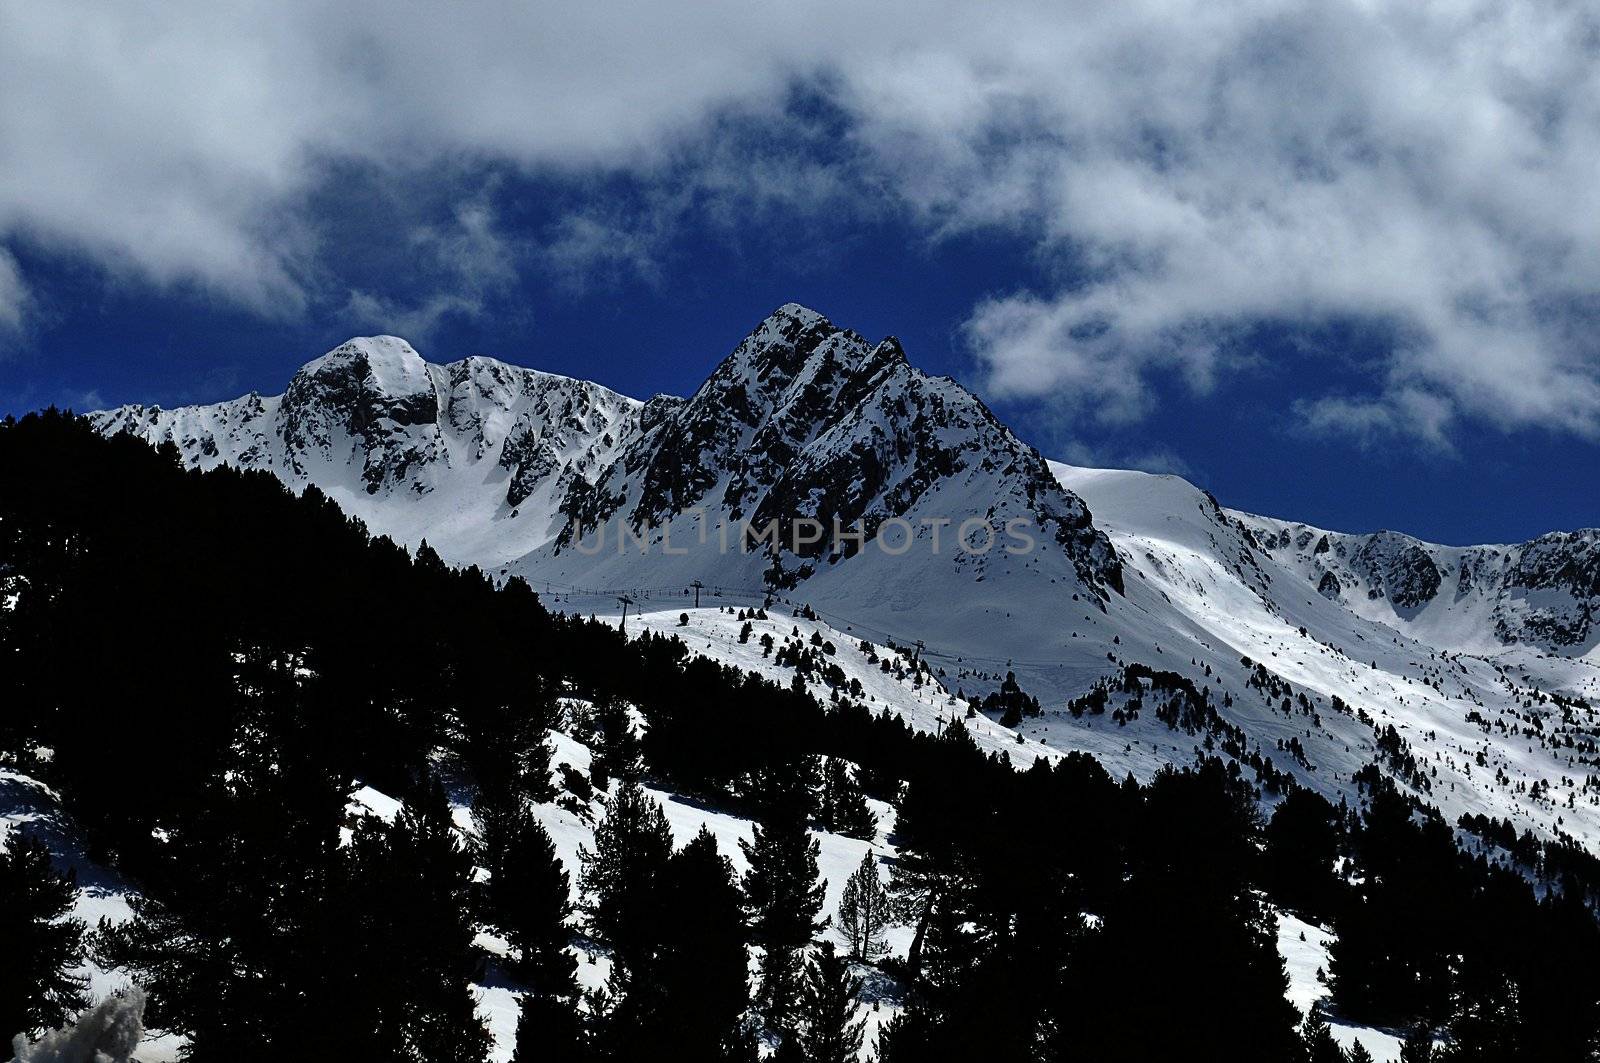 snowy mountains of Andorra la Vella